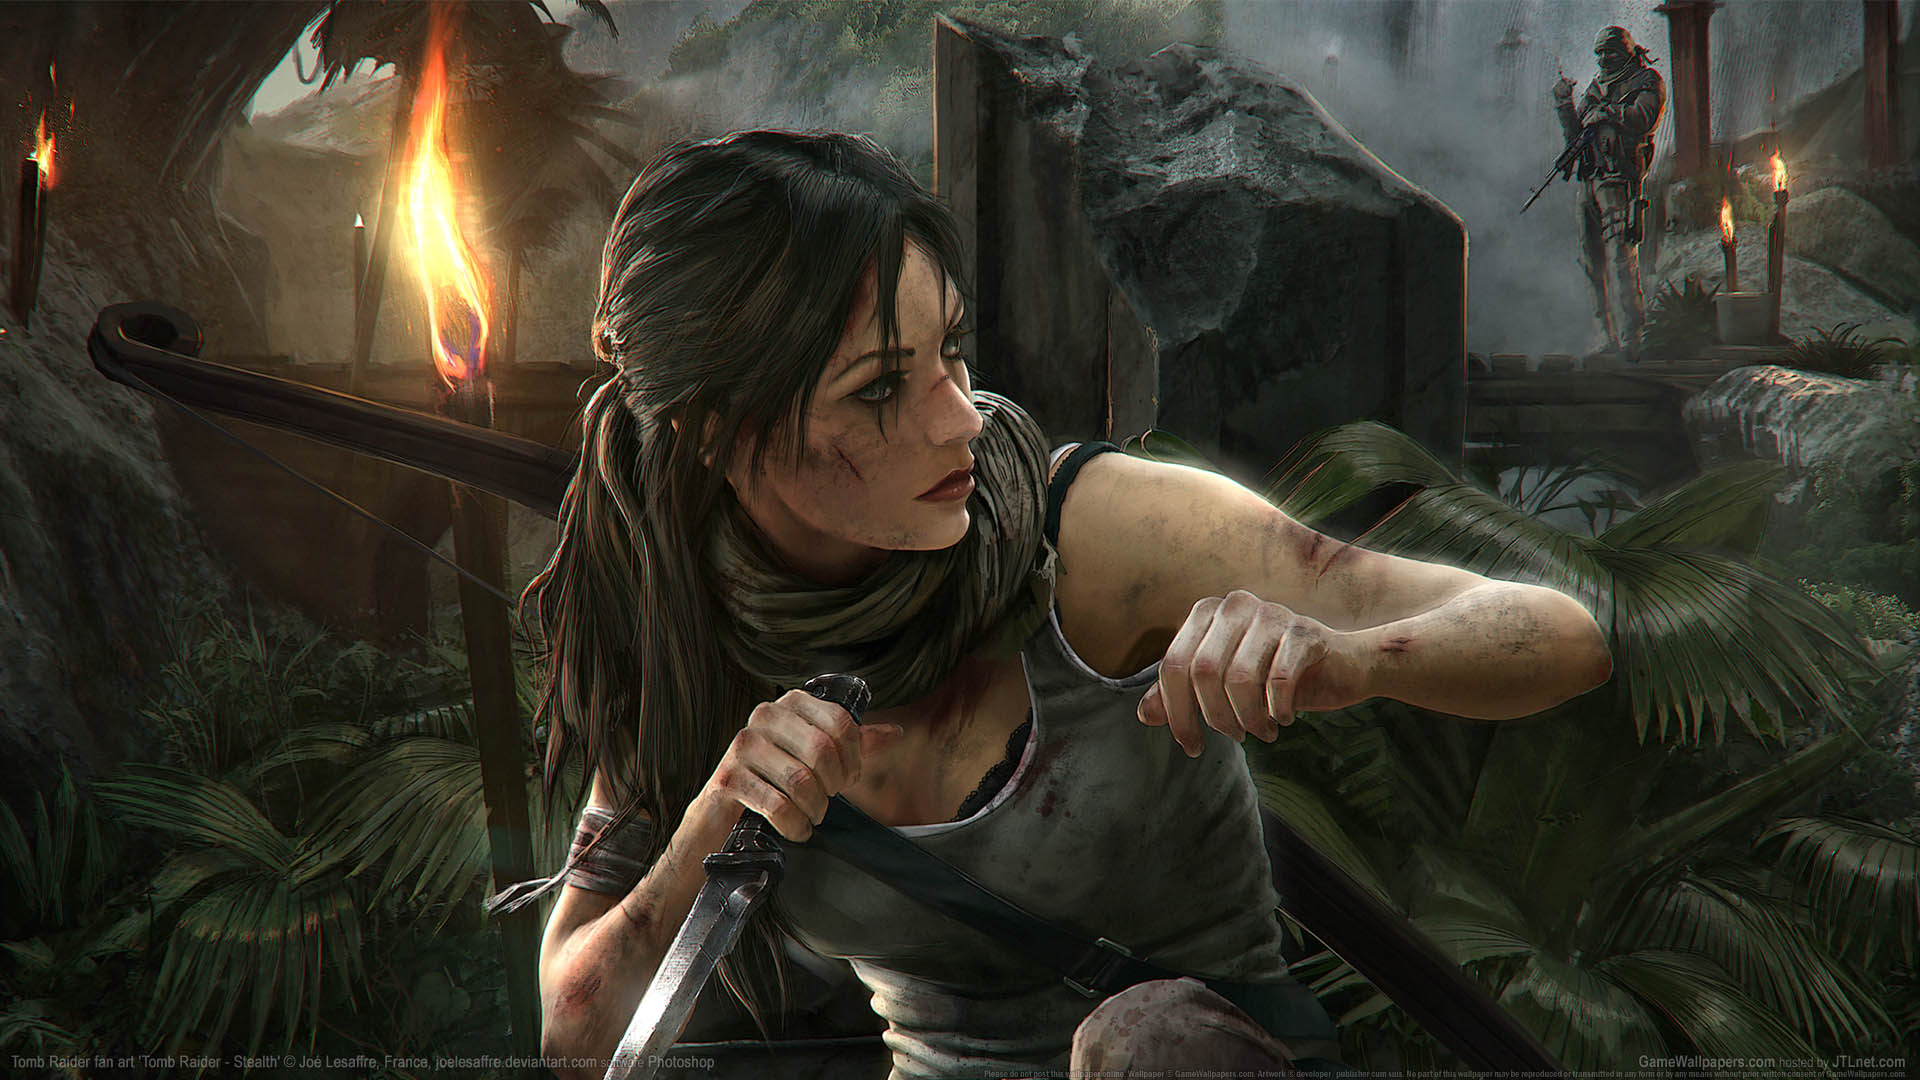 Tomb Raider fan art fond d'cran 09 1920x1080